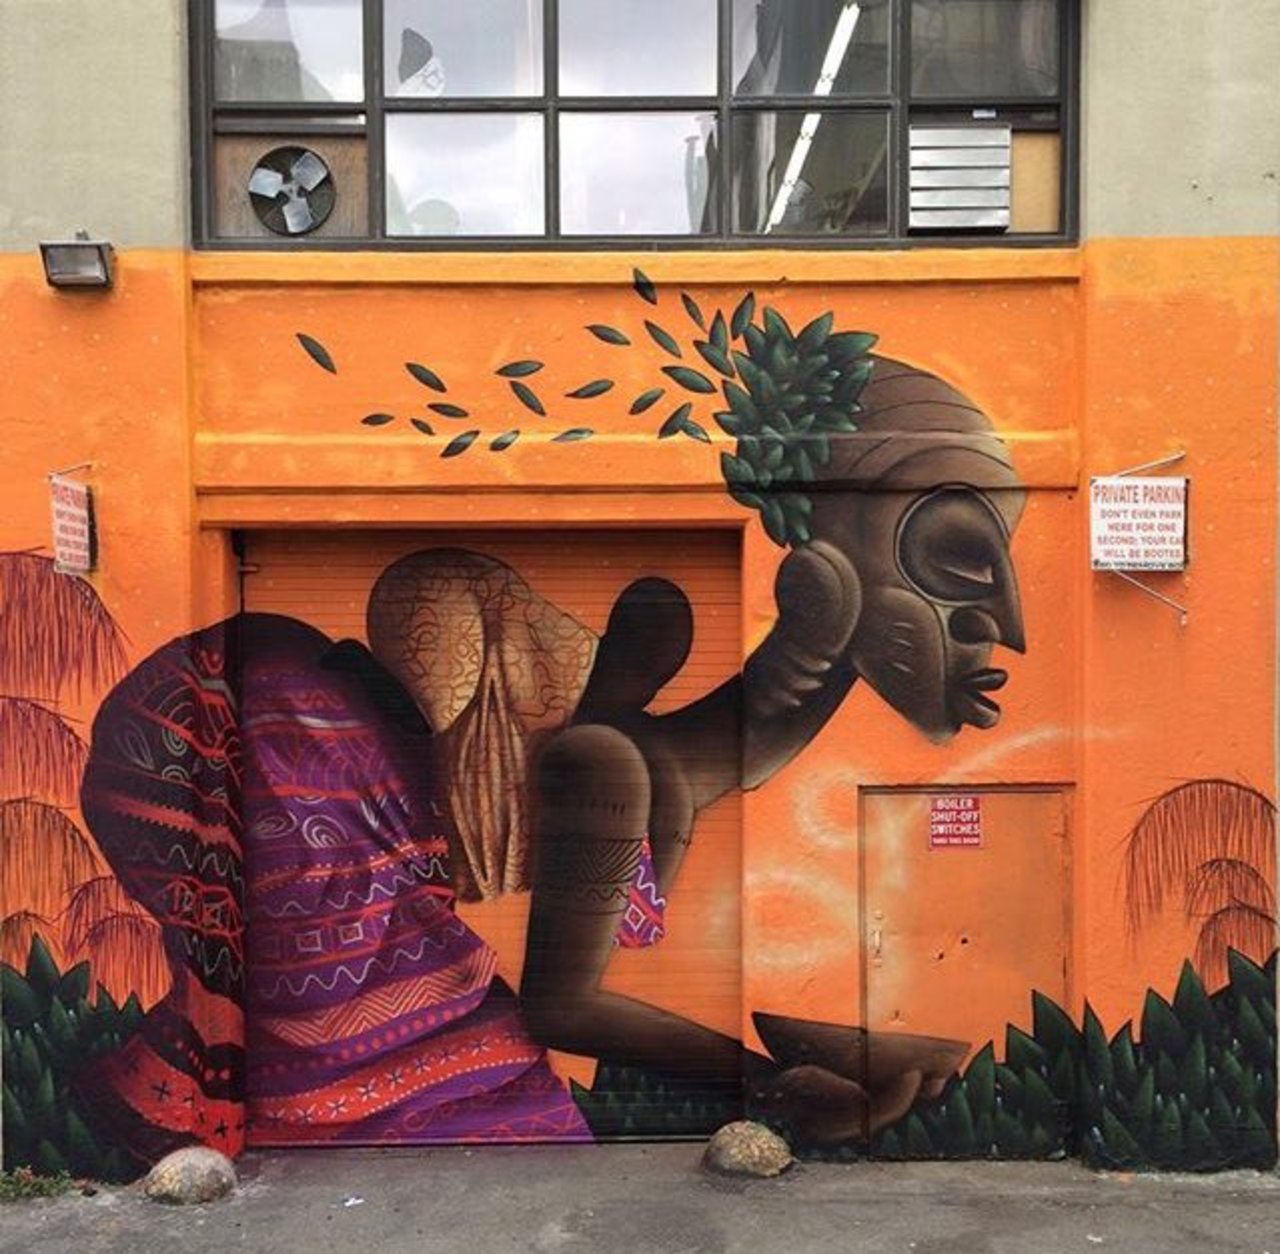 RT belilac "RT belilac "RT belilac "New Street Art by Alexandre Keto in NYC 

#art #graffiti #mural #streetart https://t.co/5GlAopJczl"""